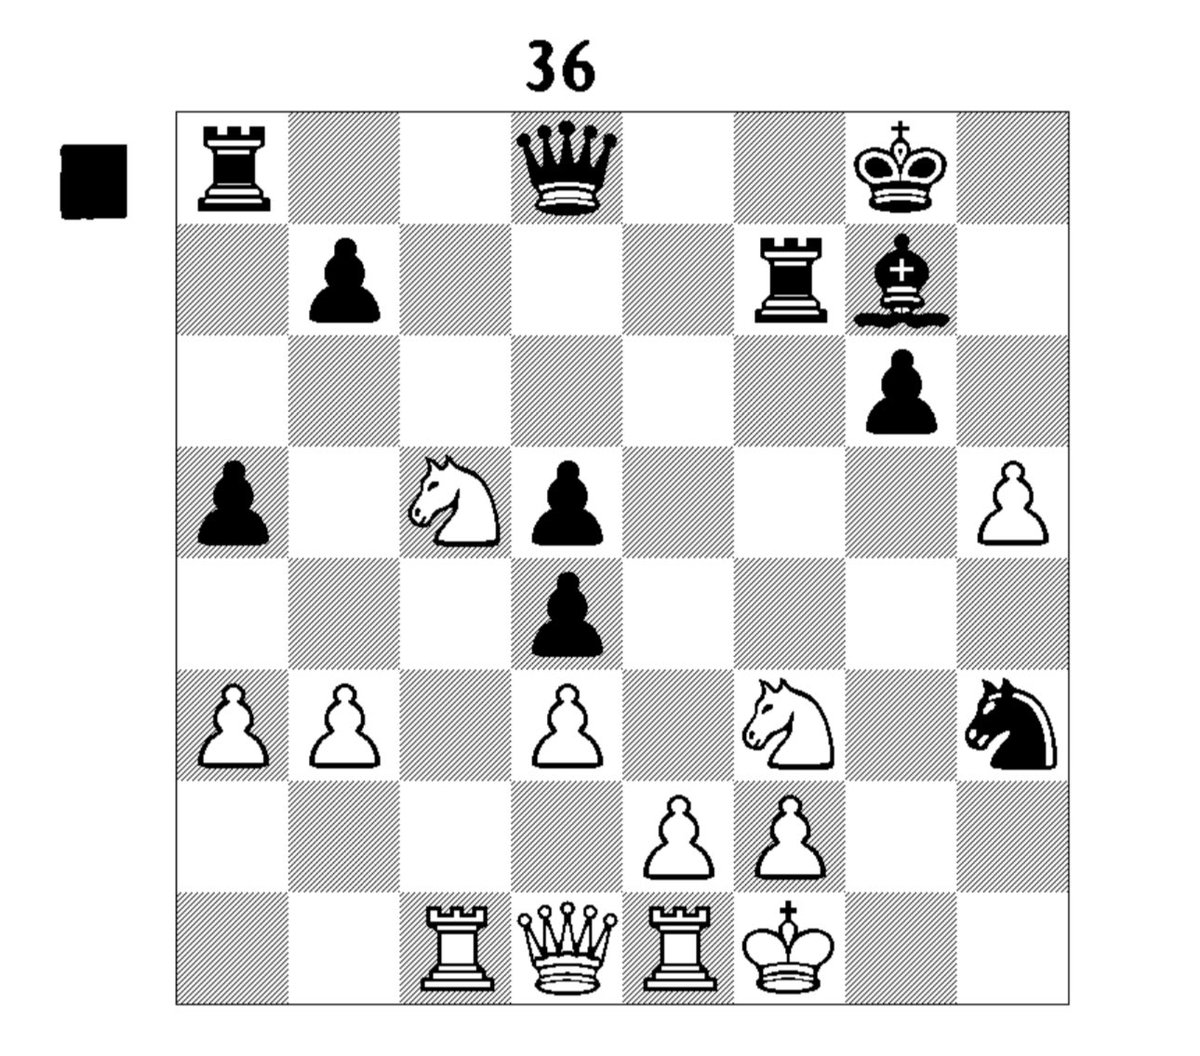 If I gotta do Coach Bruna Homework, so do you 🤣. Black to move. #chess #chesspunks